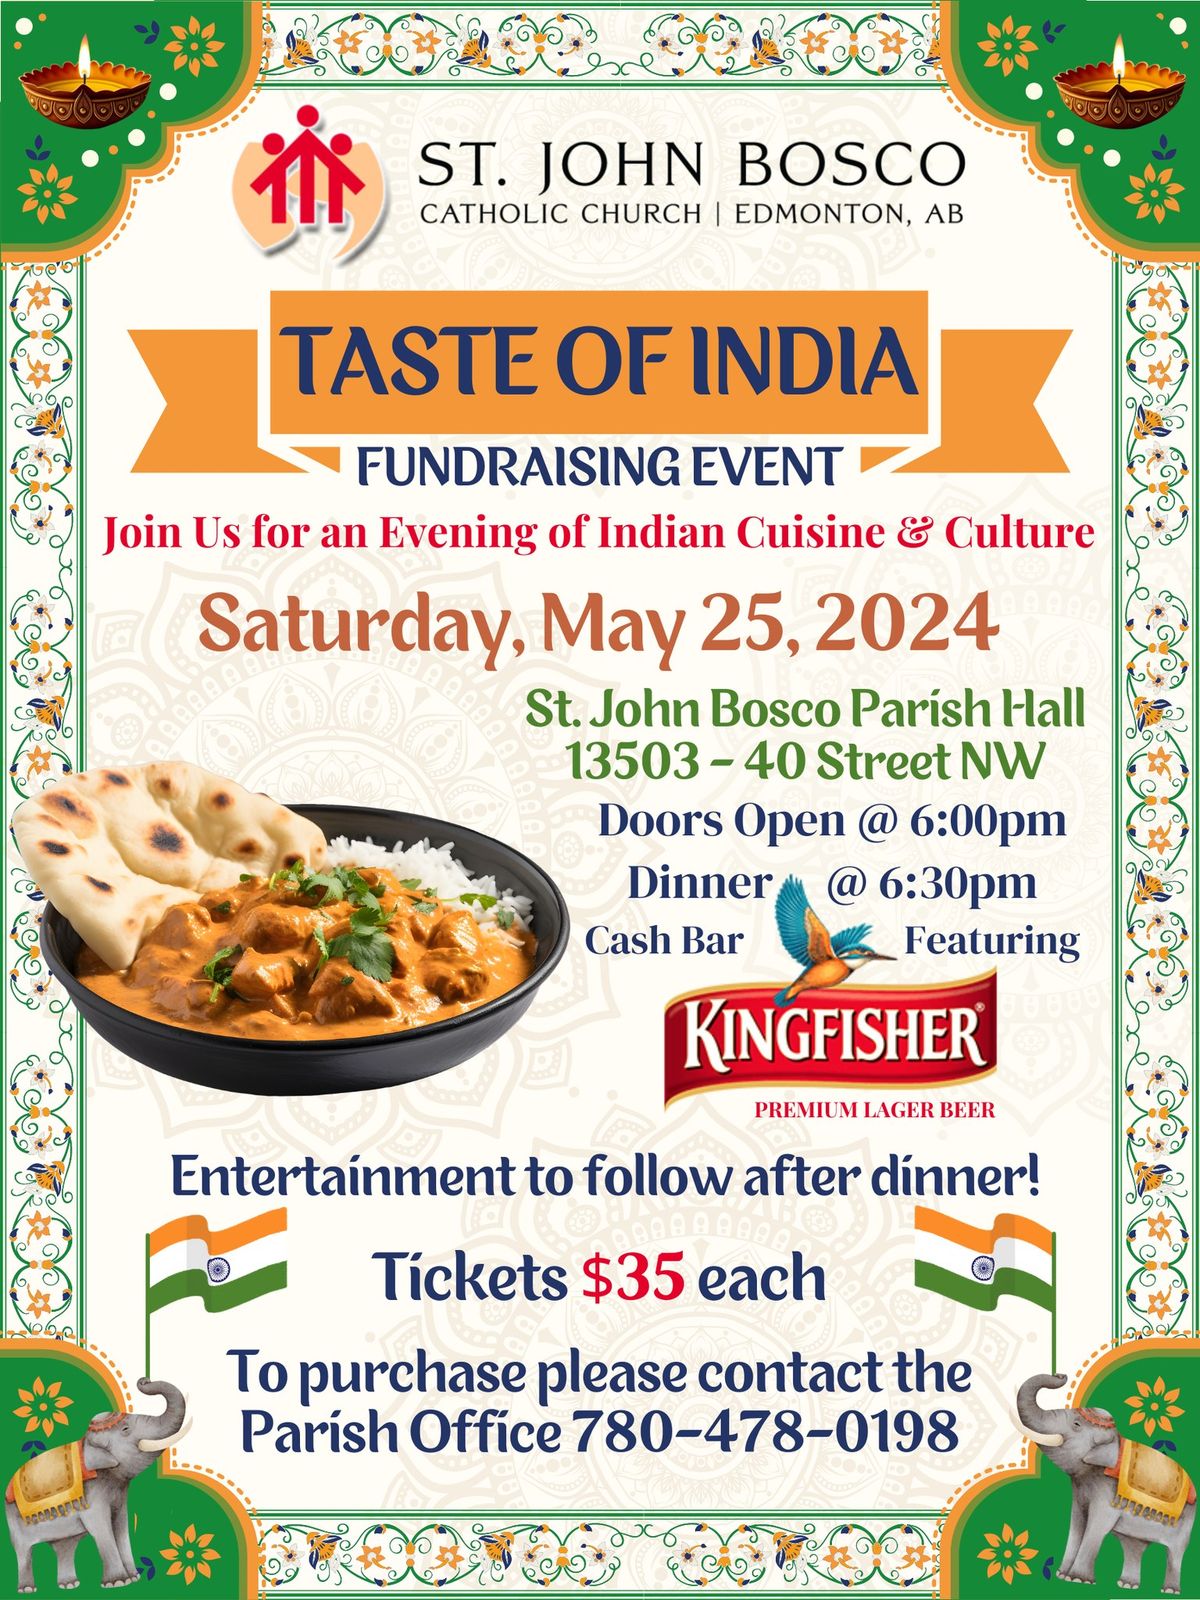 Taste of India - Fundraising Event